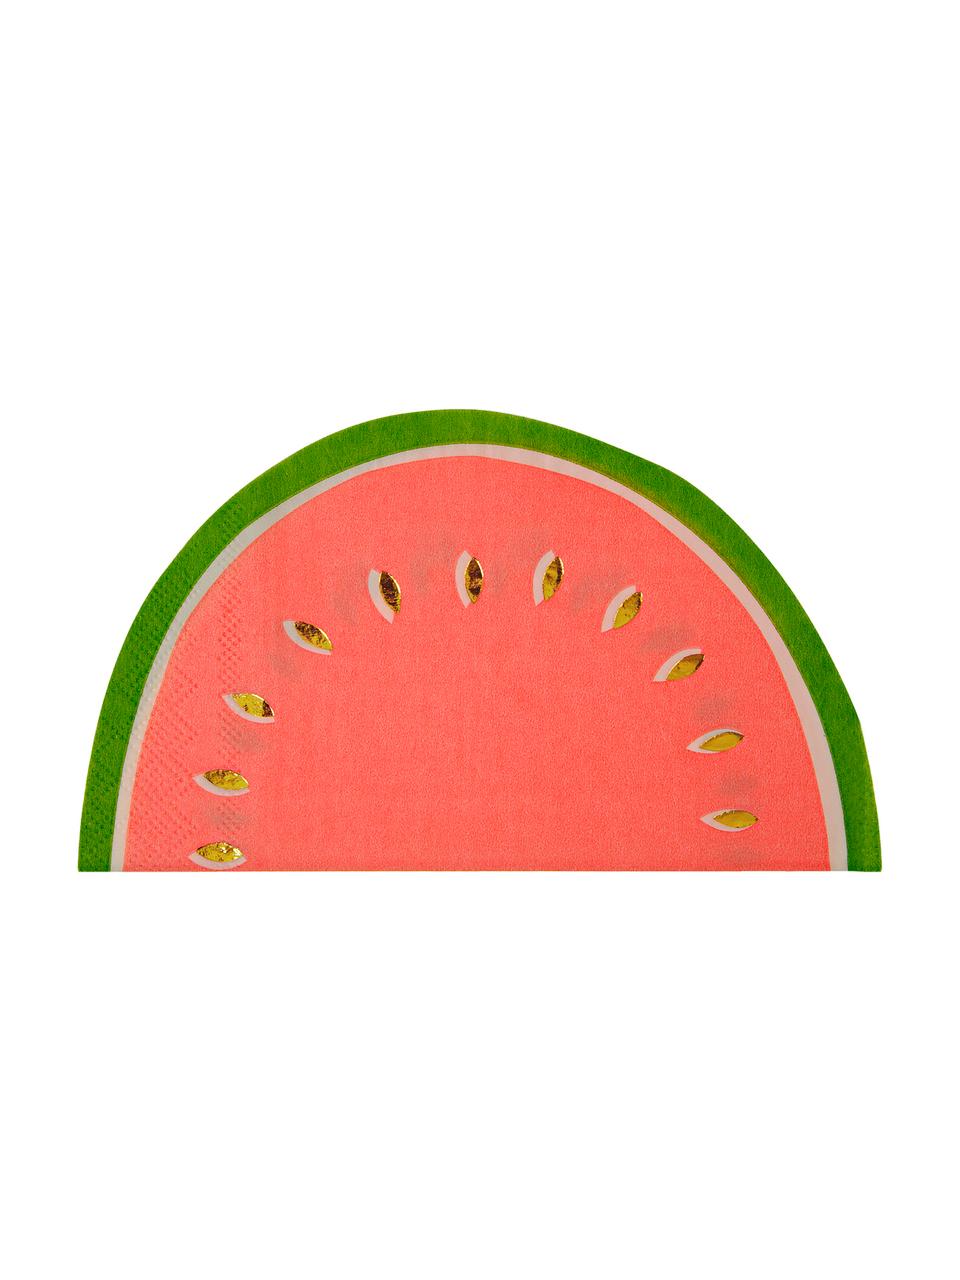 Papírový ubrousek Watermelon, 16 ks, Červená, zelená, zlatá